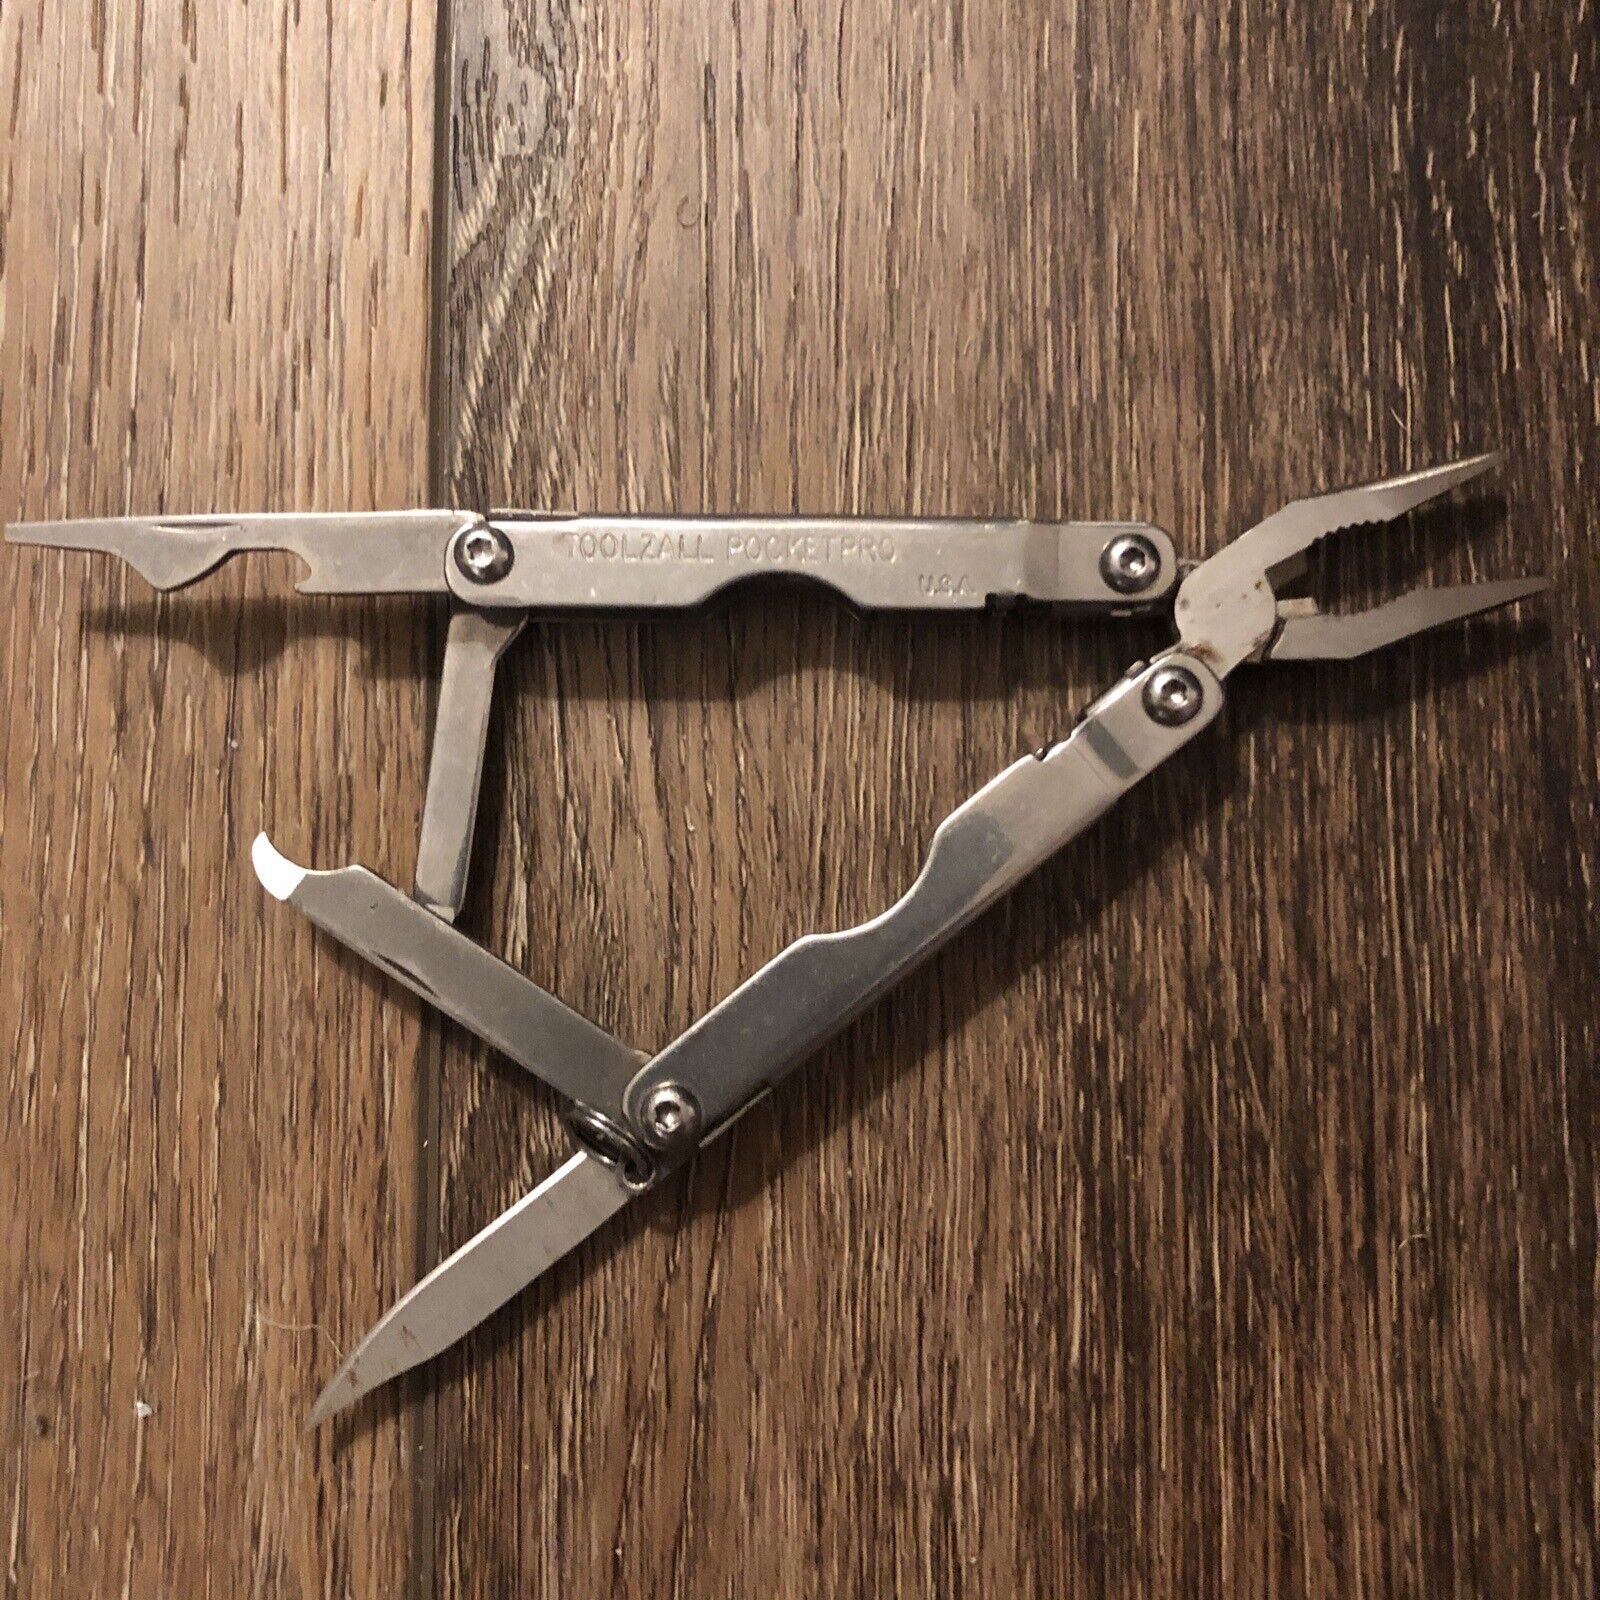 Vintage Stainless TOOLZALL PocketPro Multi-Tool Folding Knife